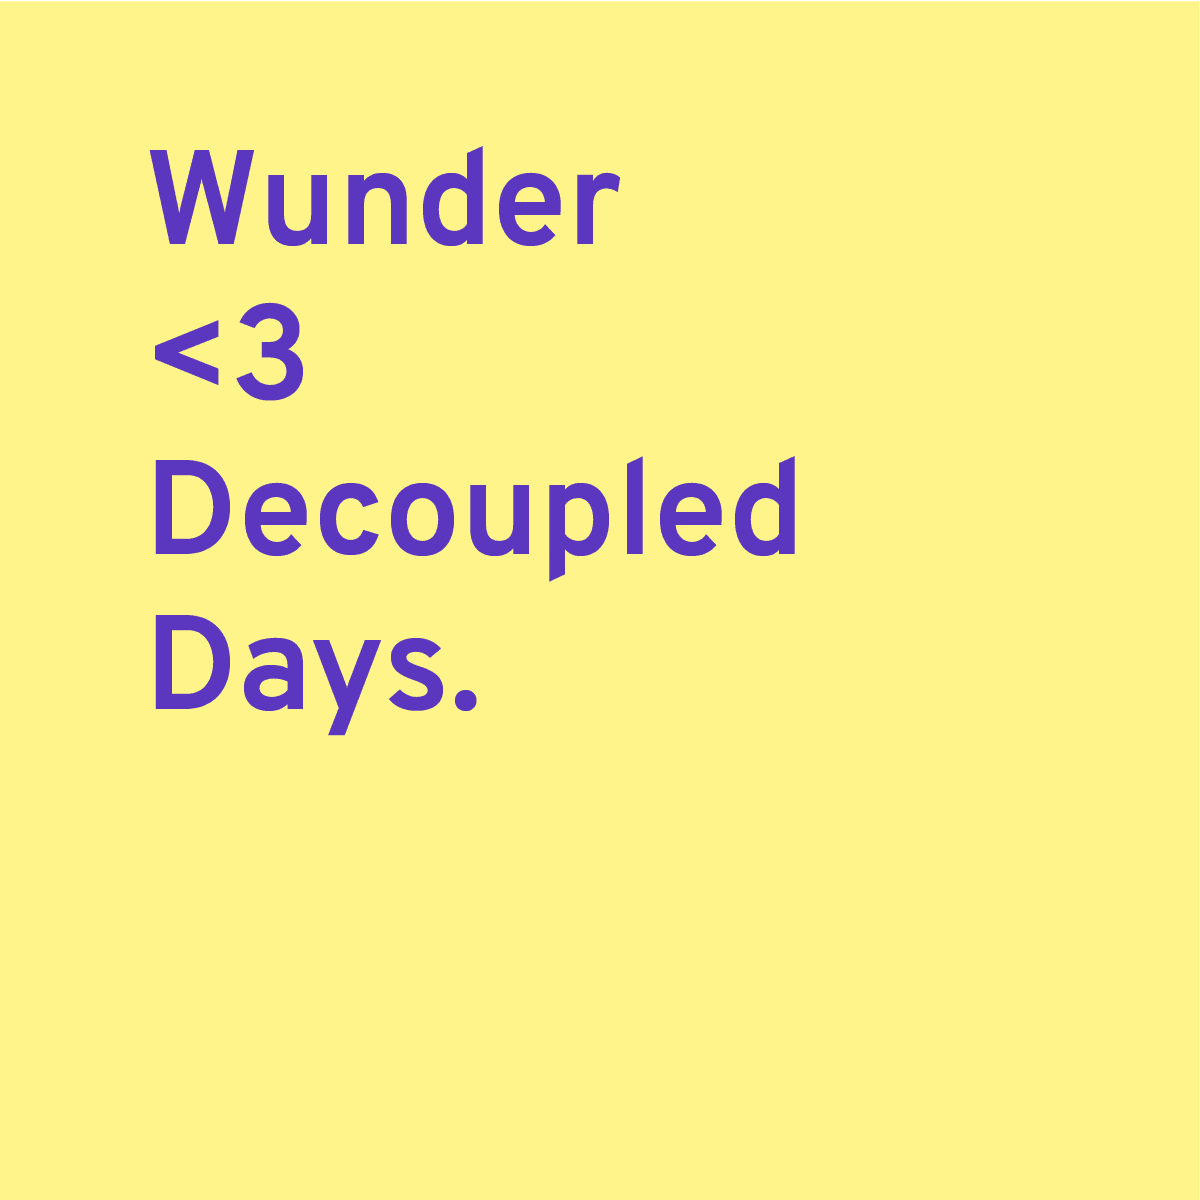 Wuder loves decoupled days.